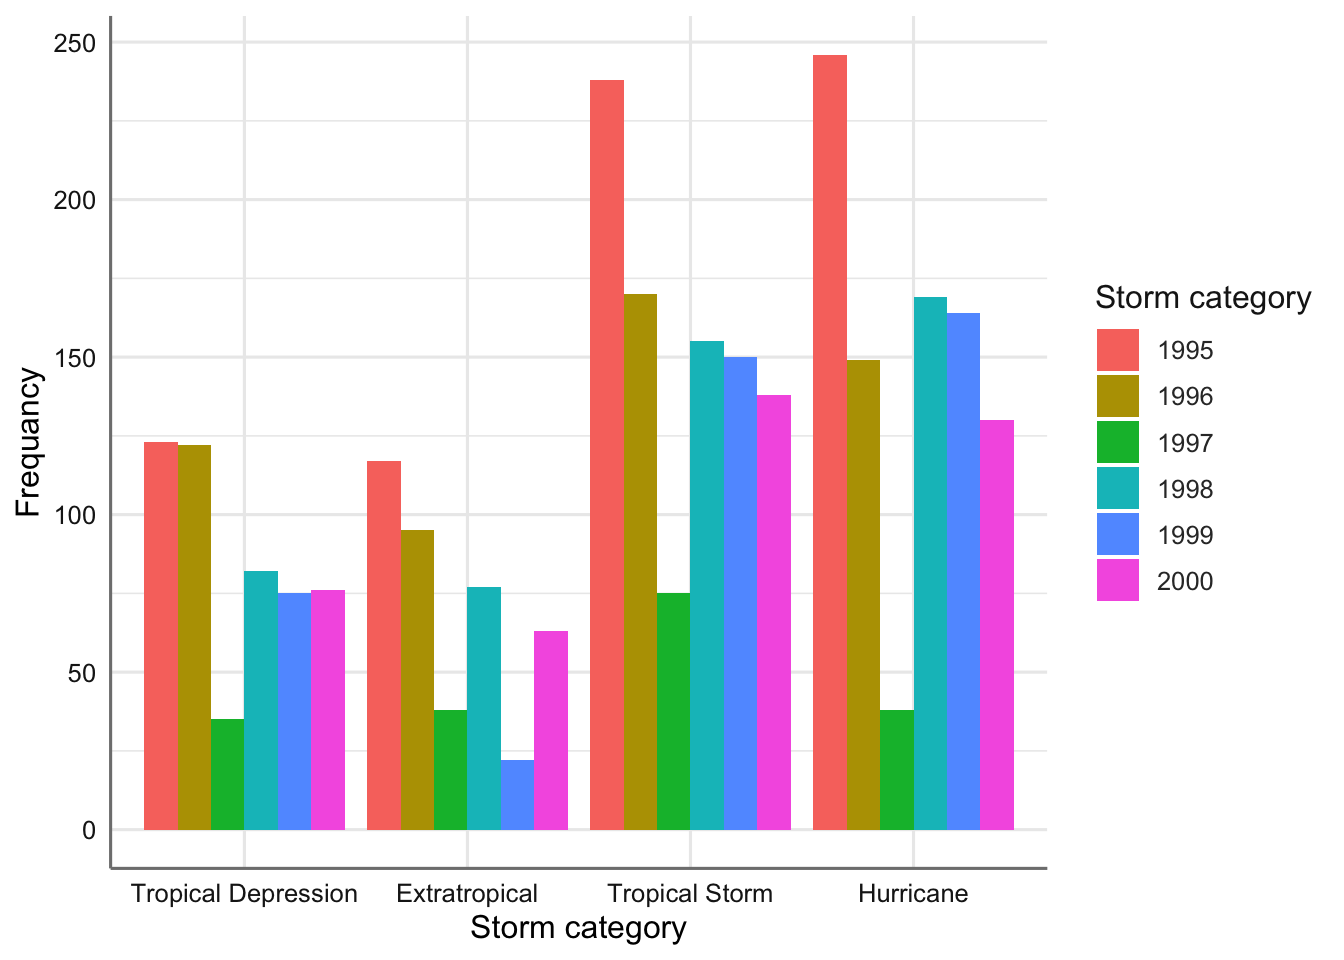 Gráfico de barras agrupado para el tipo de tormenta versus año.